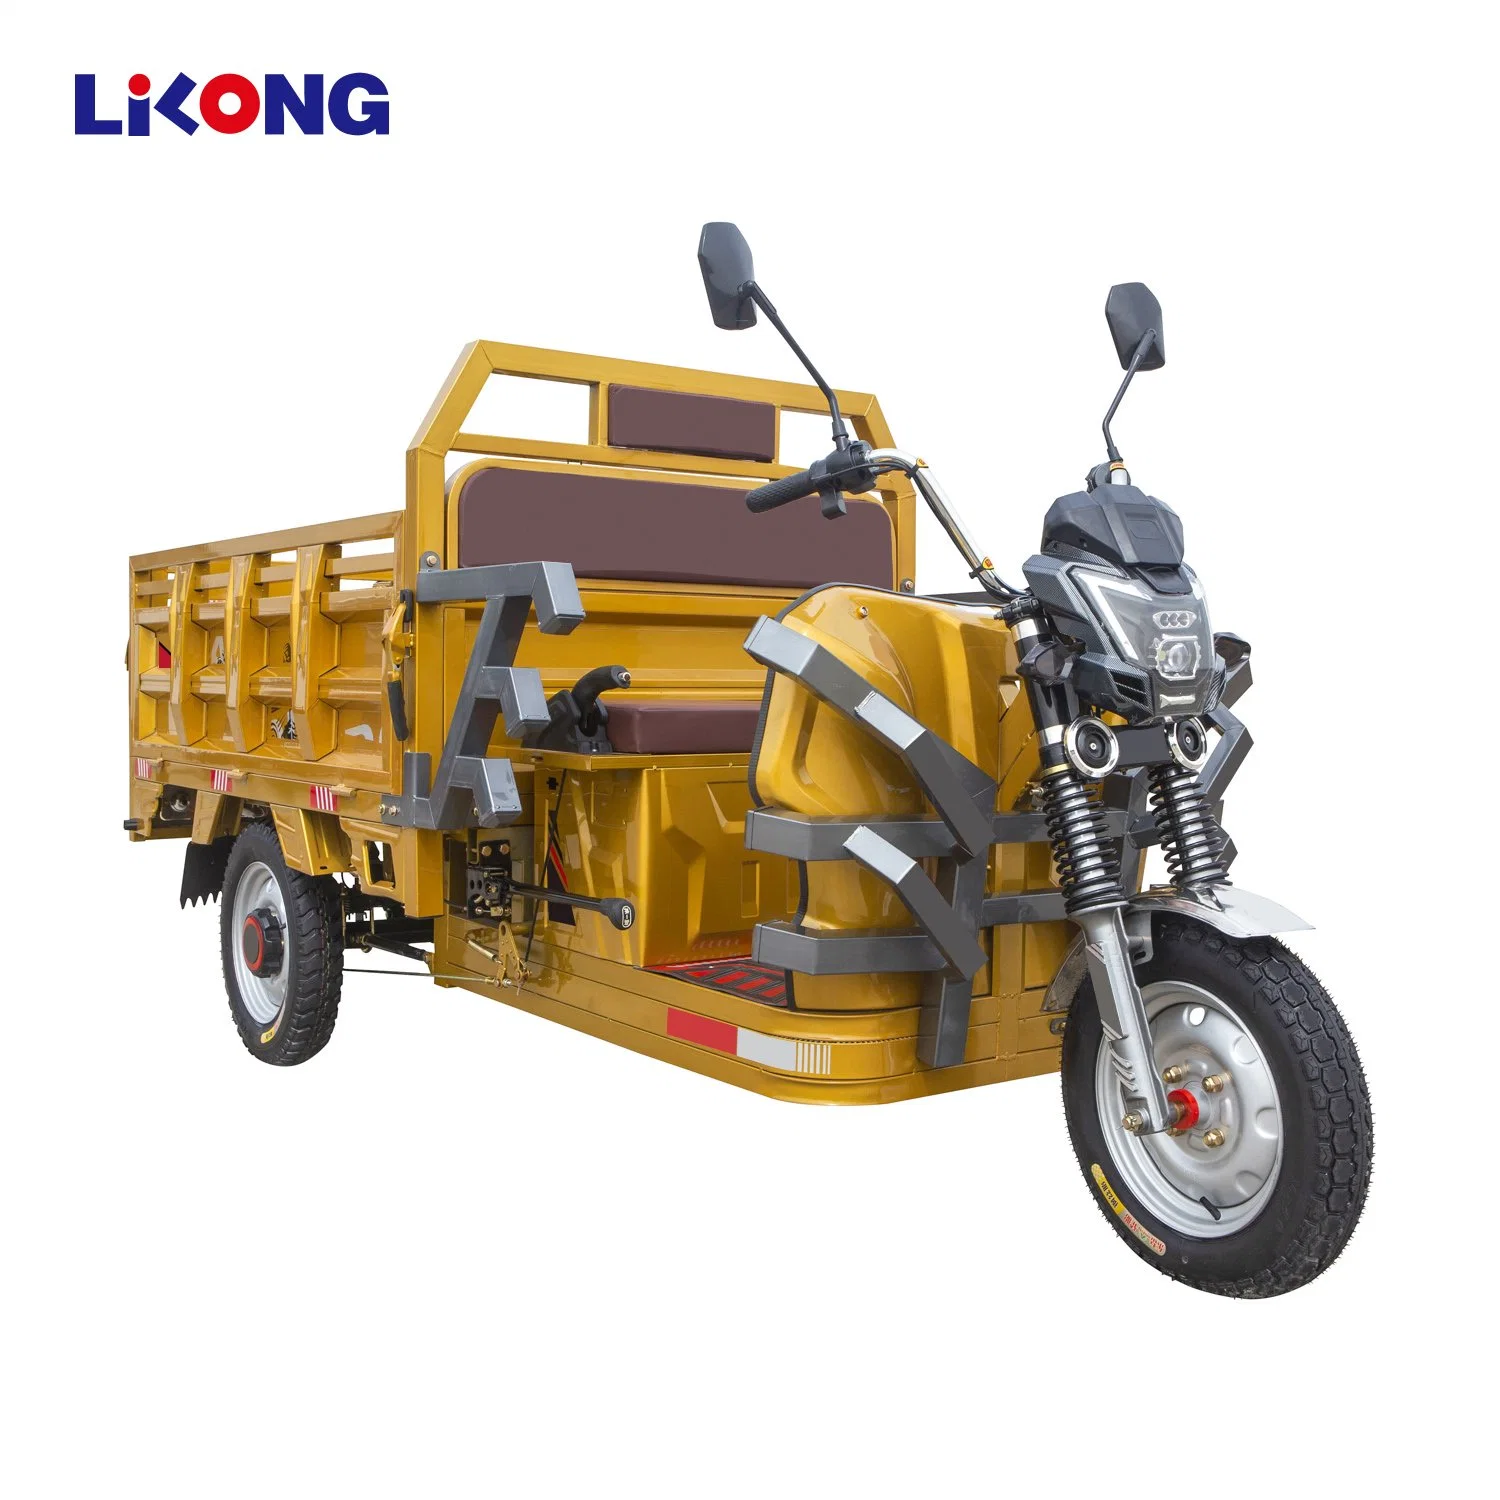 Lilong 3 Motociclo com carro eléctrico da roda de carro elevador eléctrico de cabina Scooter triciclo de carga fechados para adultos